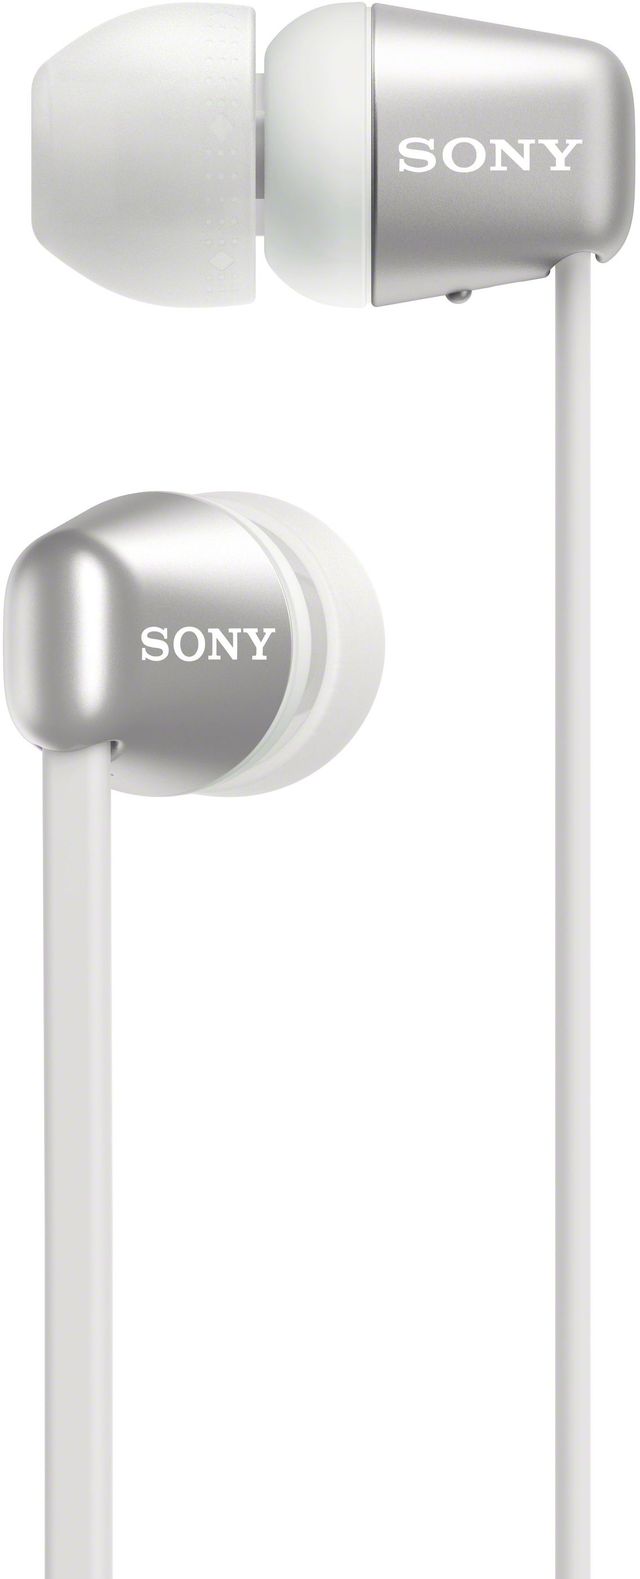 Sony WI-C310 White Wireless In-Ear Headphones 1